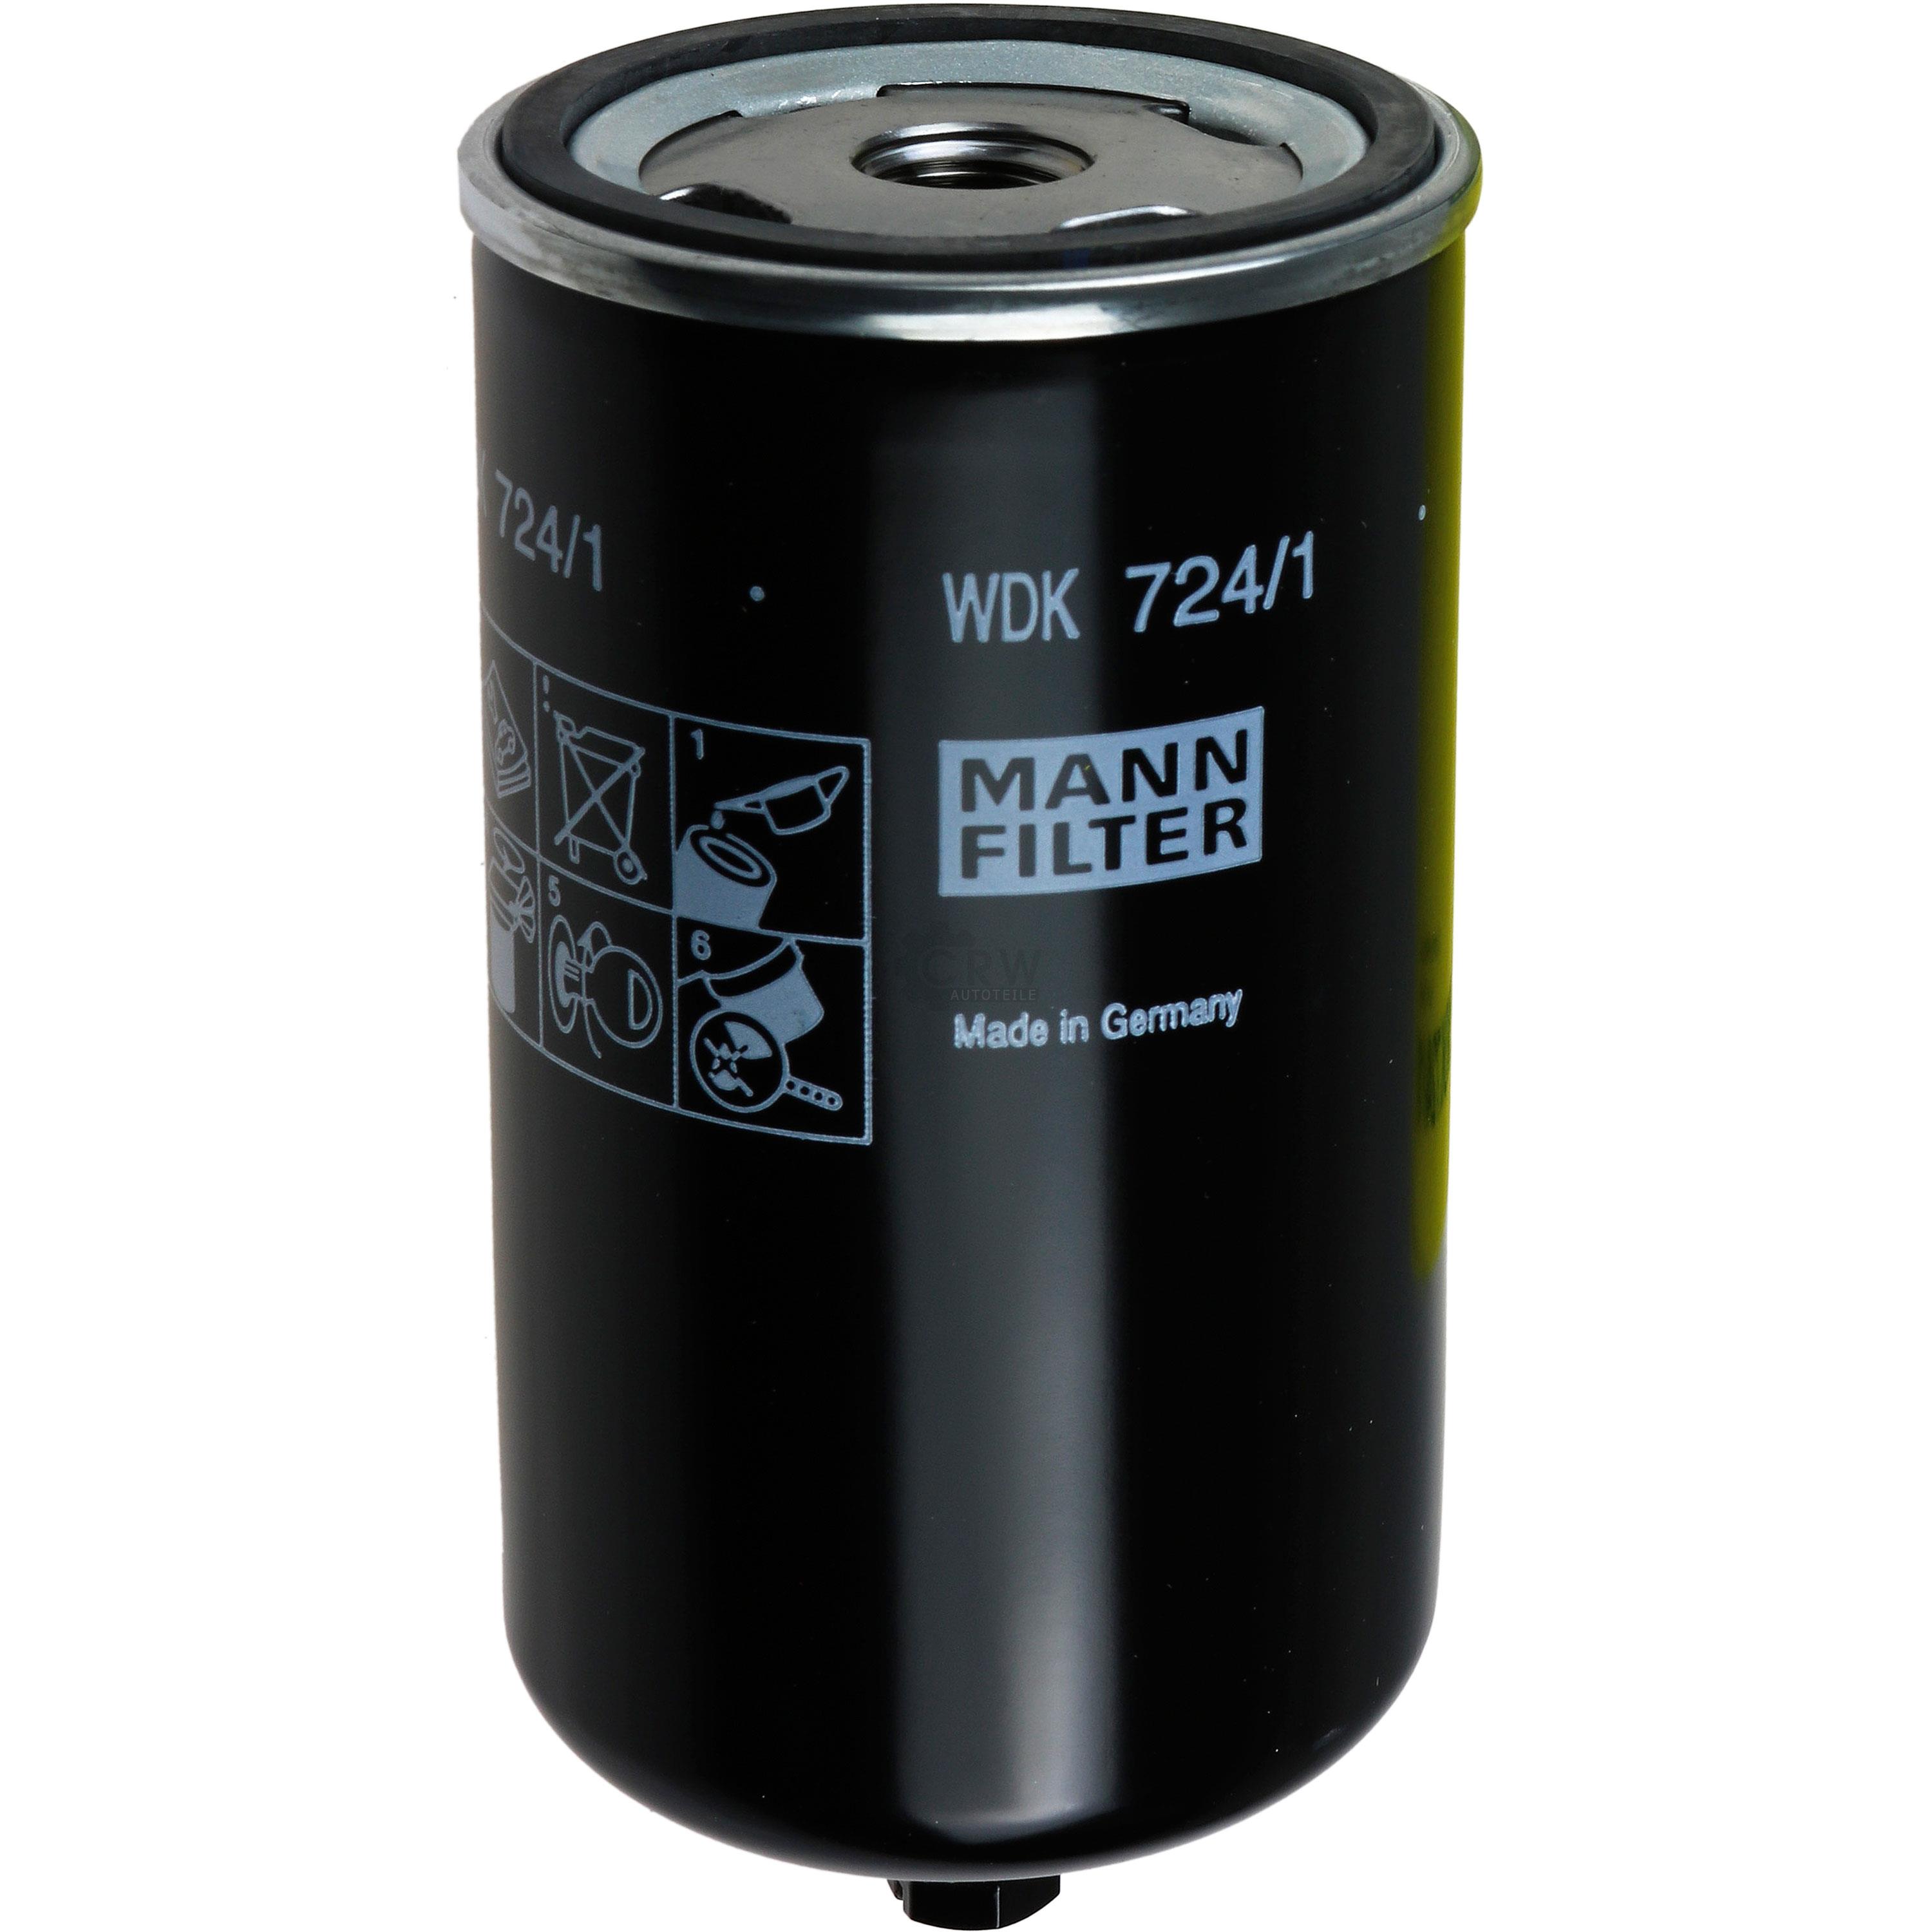 MANN-FILTER Kraftstofffilter WDK 724/1 Fuel Filter